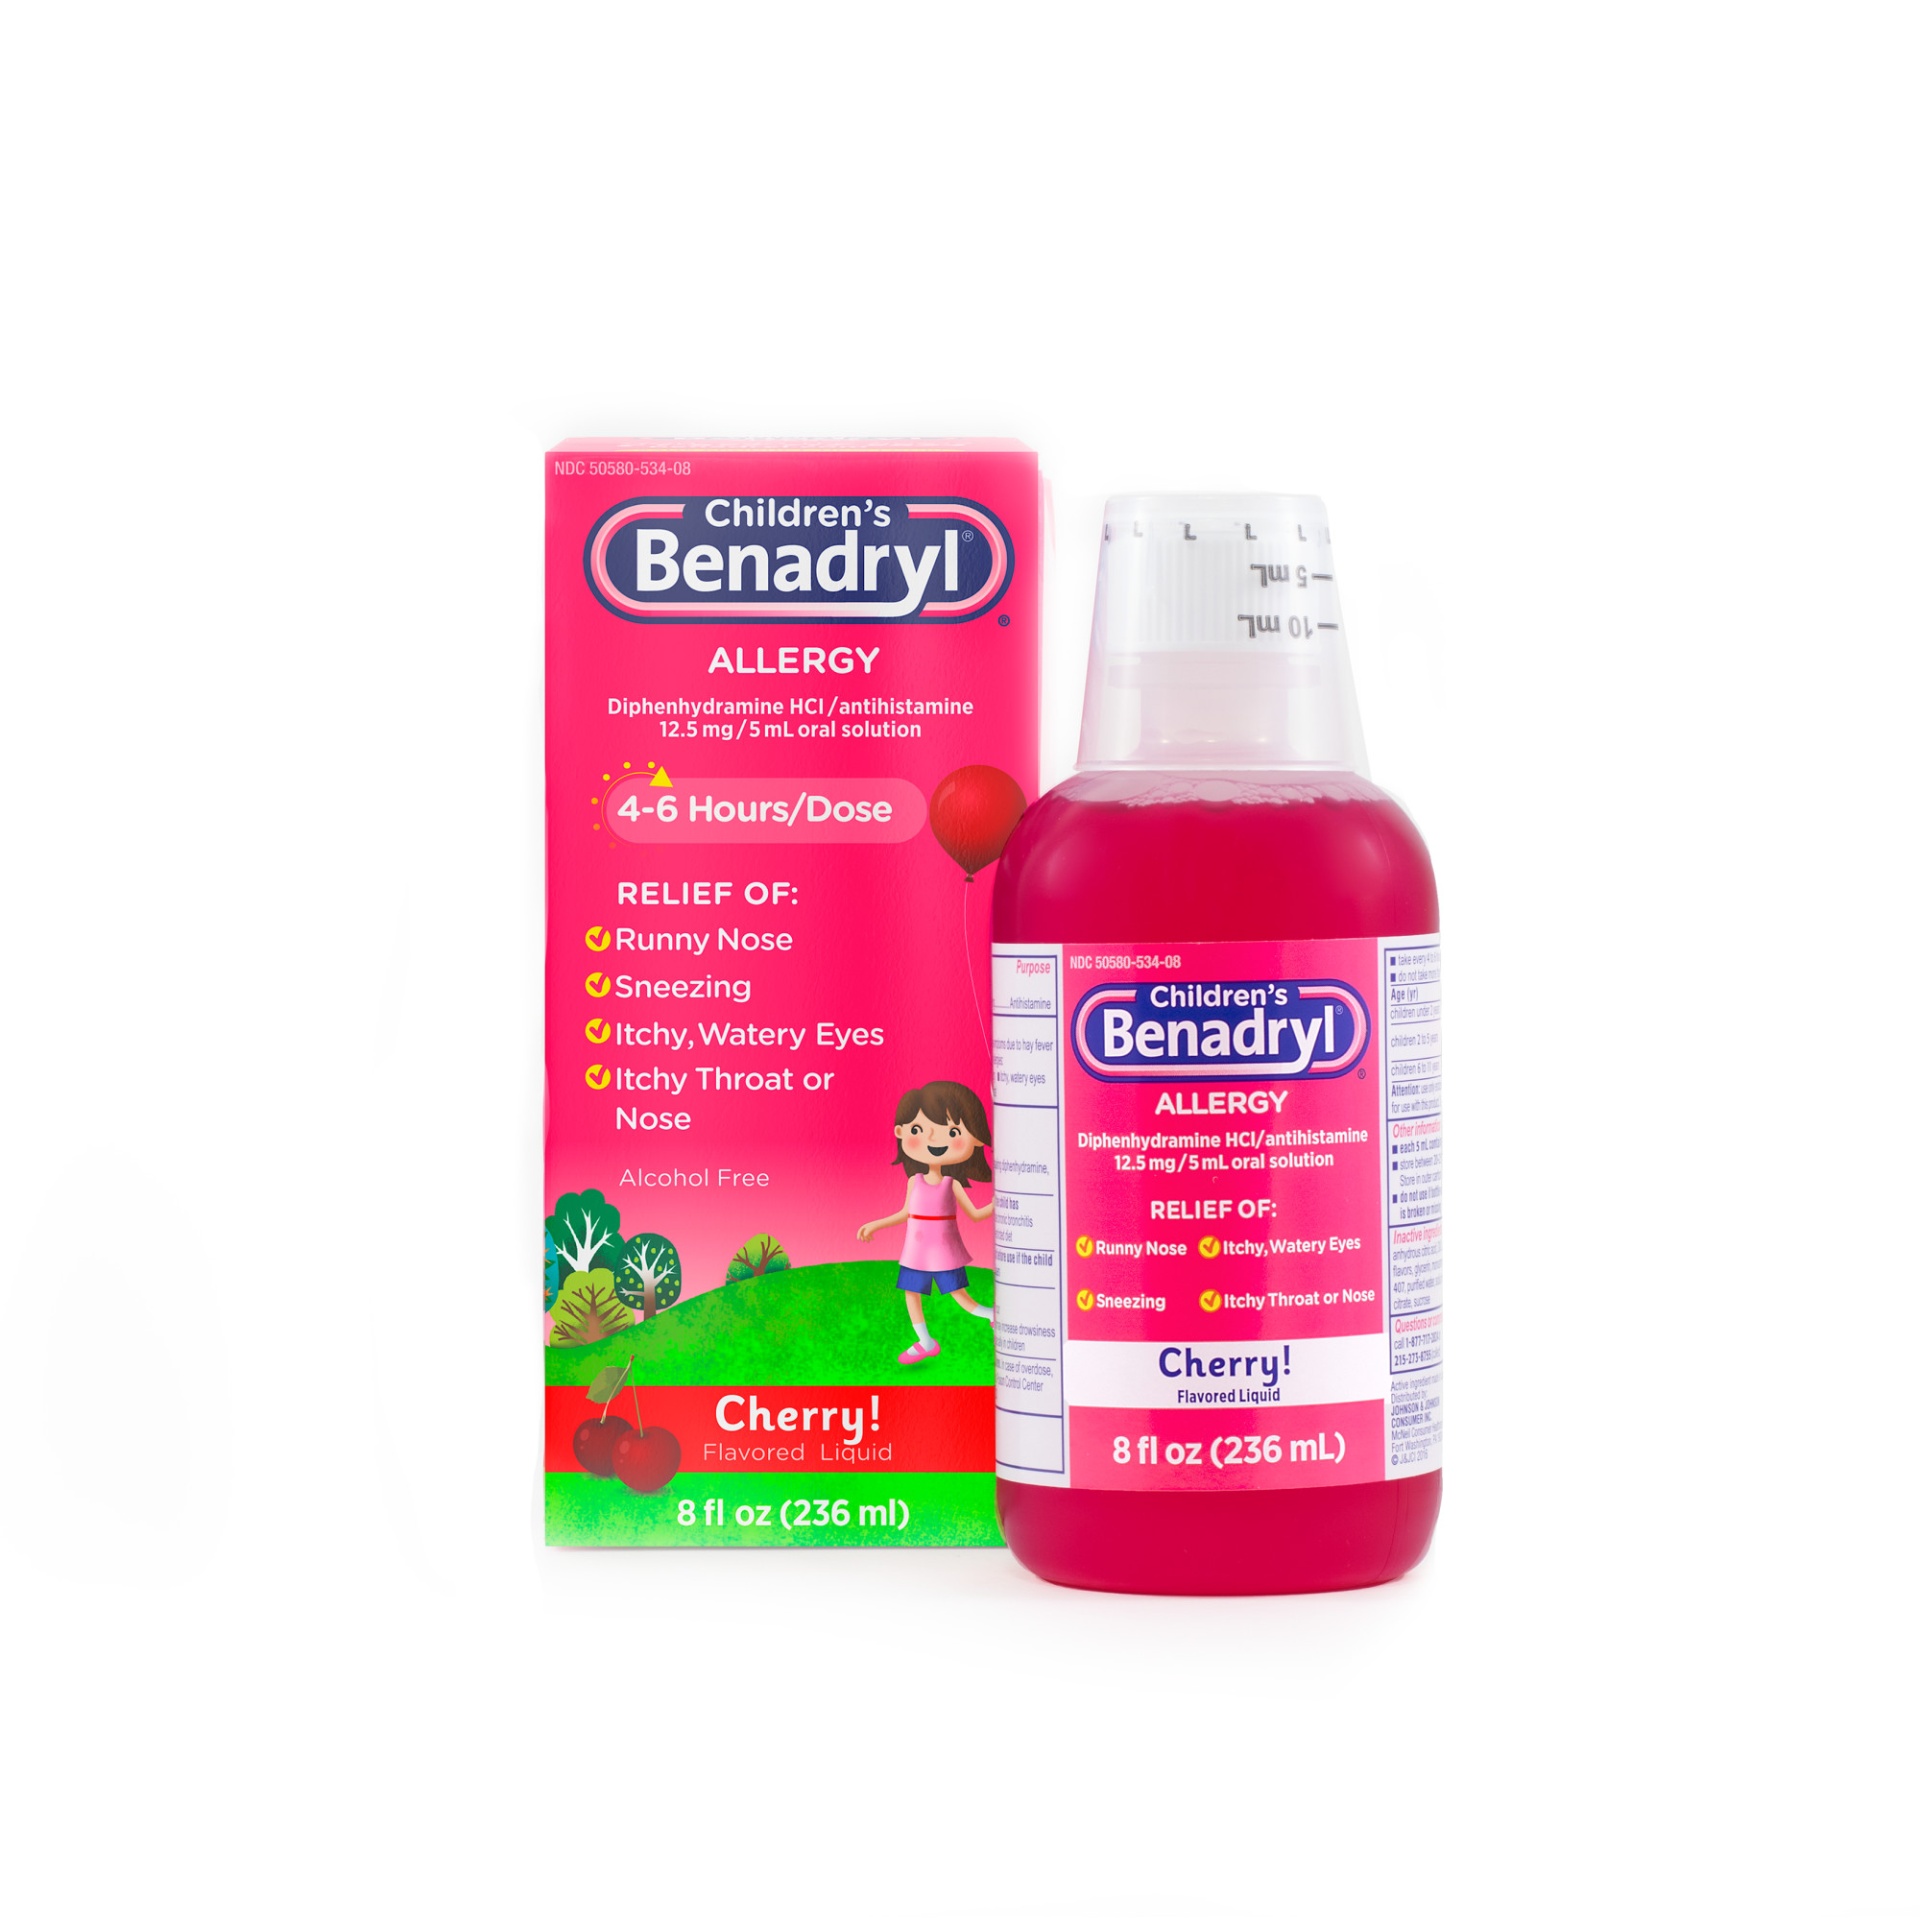 slide 1 of 5, Children's Benadryl Allergy Relief Liquid Medicine with Diphenhydramine HCl Antihistamine for Kids' Allergy Relief, Effective Allergy Relief, Cherry Flavor, 8 fl oz